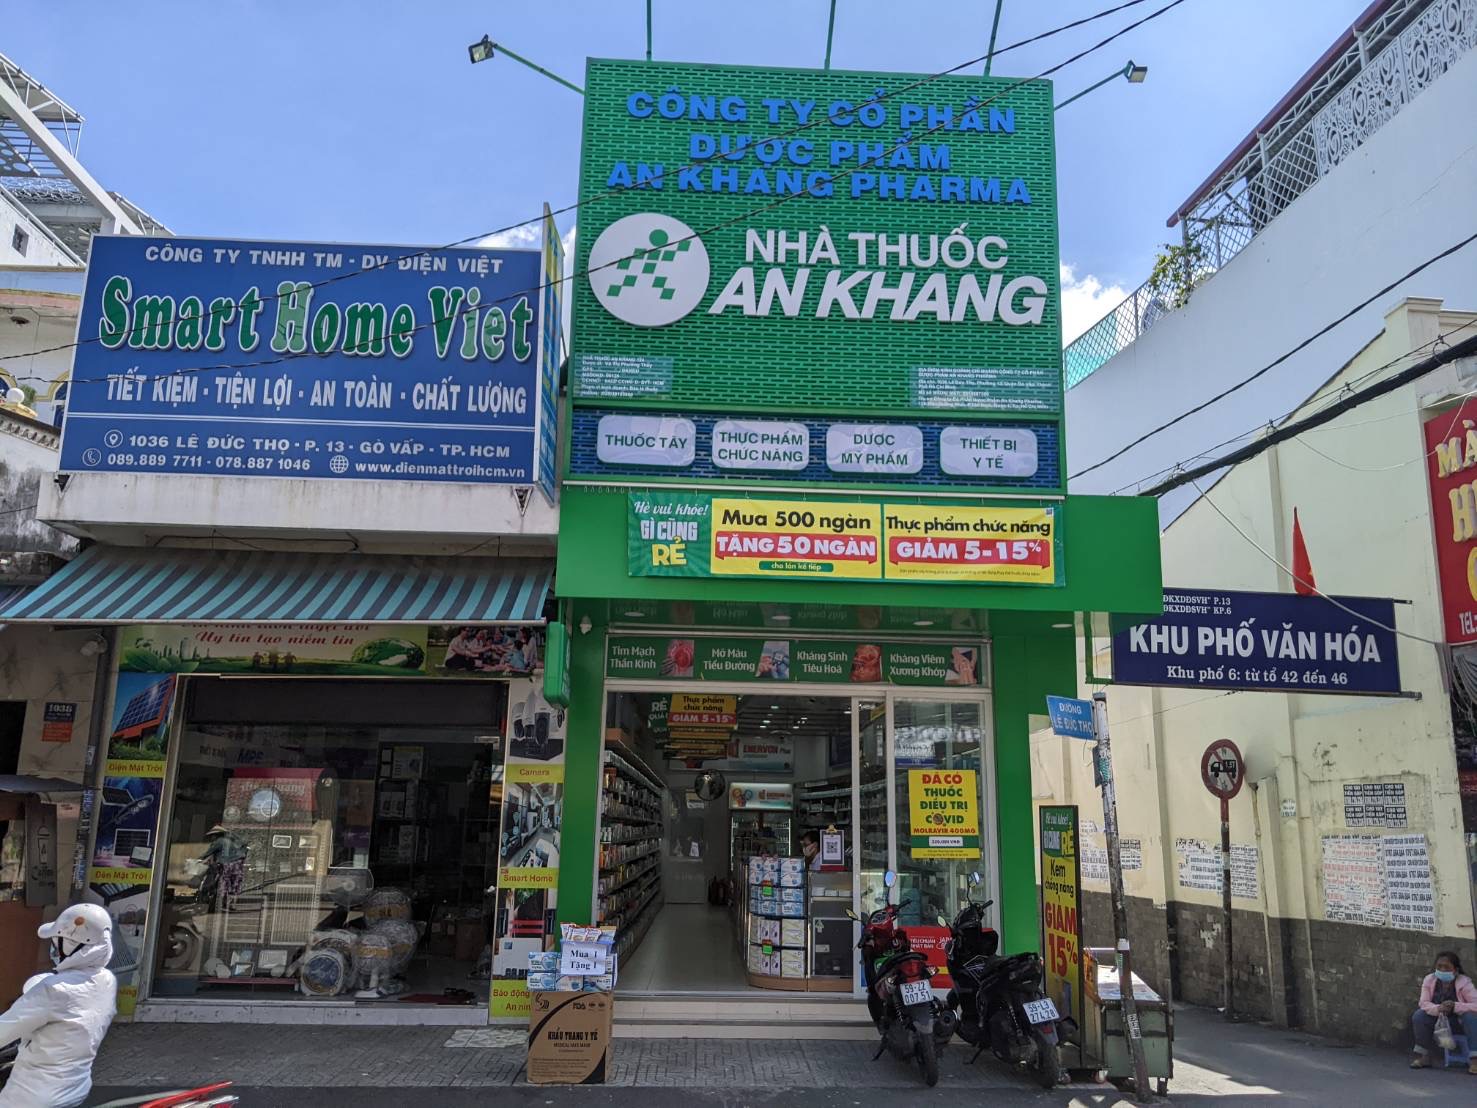 1036 Lê Đức Thọ, Phường 13, Quận Gò Vấp, Thành phố Hồ Chí Minh